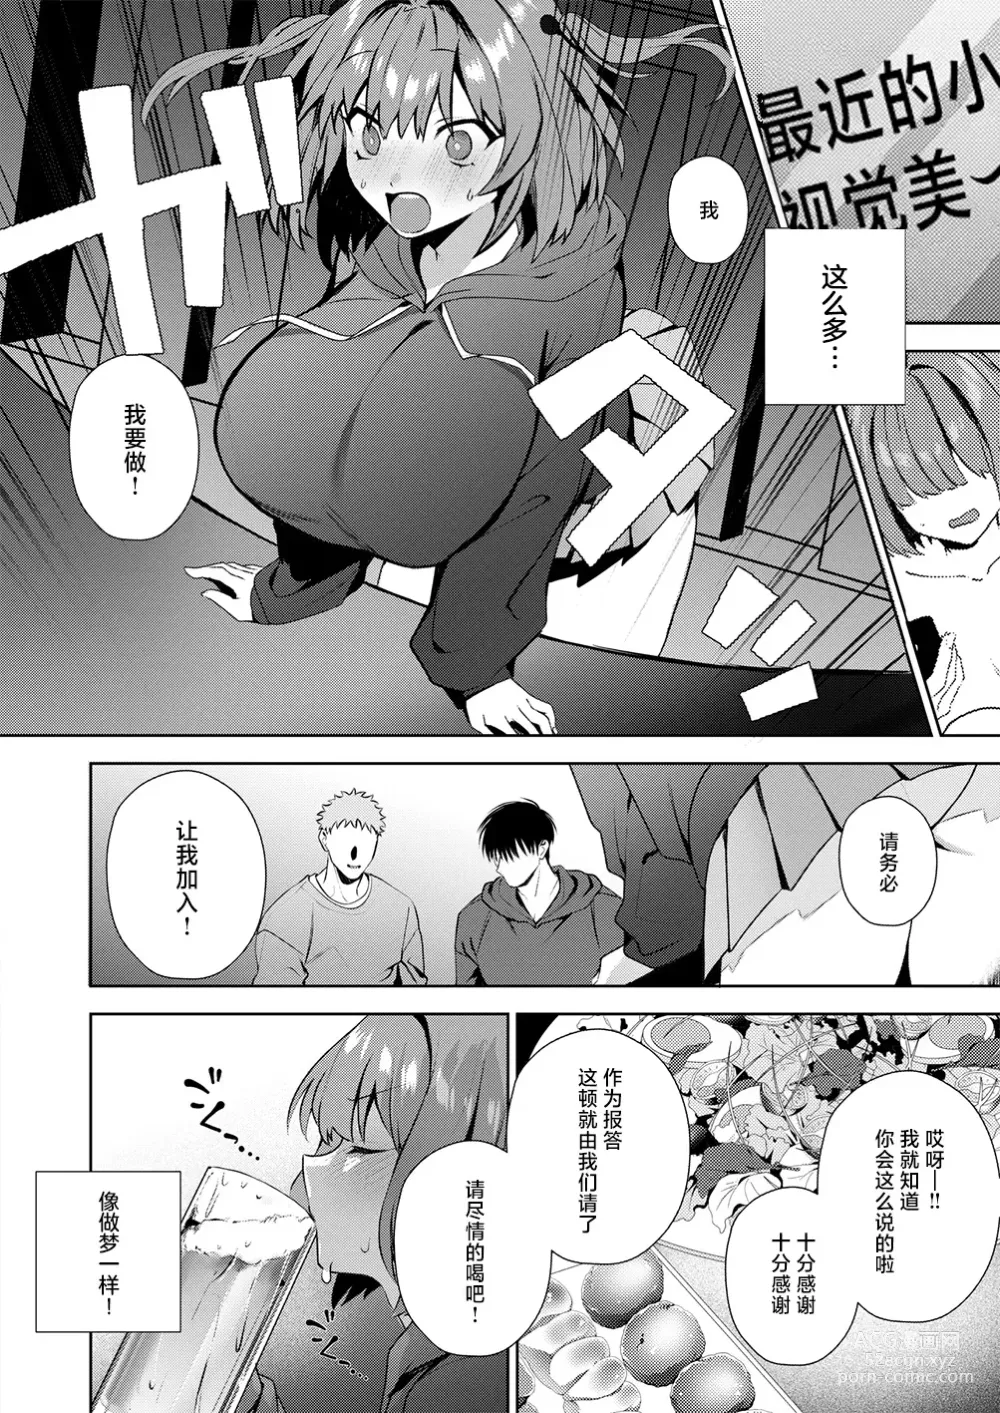 Page 8 of manga Motto Atashi o Oshite kure!